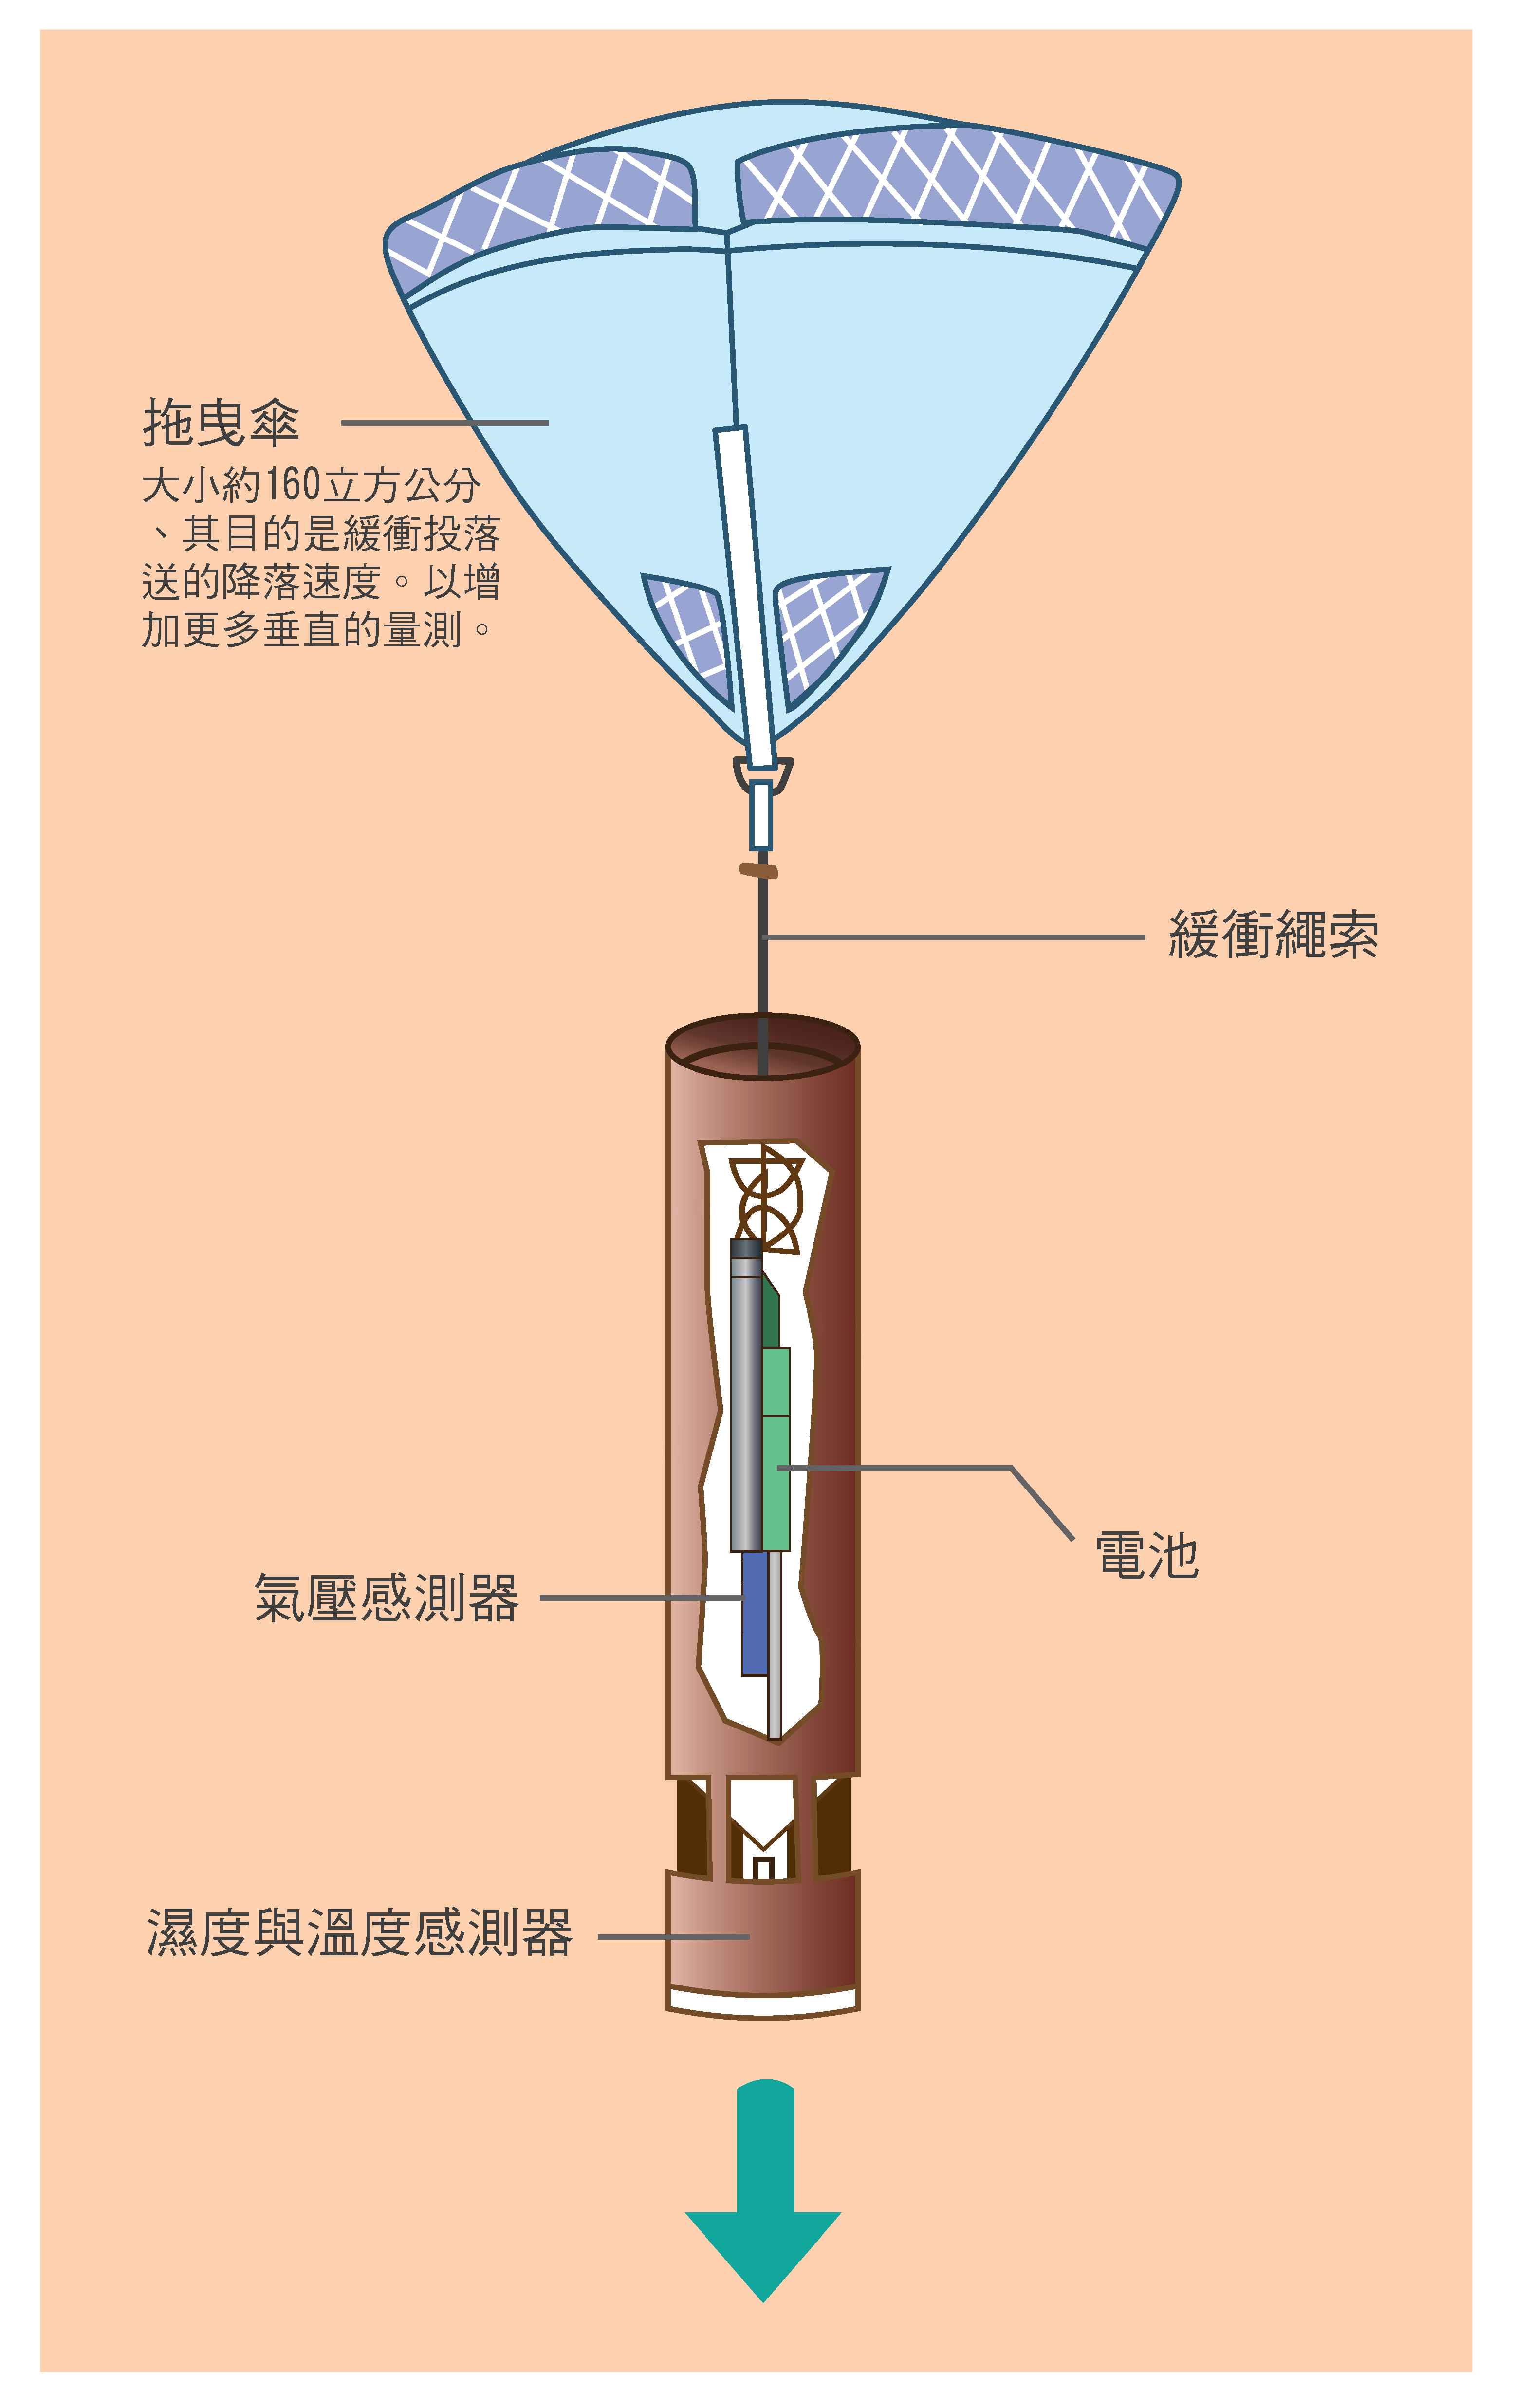 投落送裝置上面裝有拖曳傘與氣壓、濕度與溫度感測器，幫助科學家掌握颱風周圍大氣狀況。